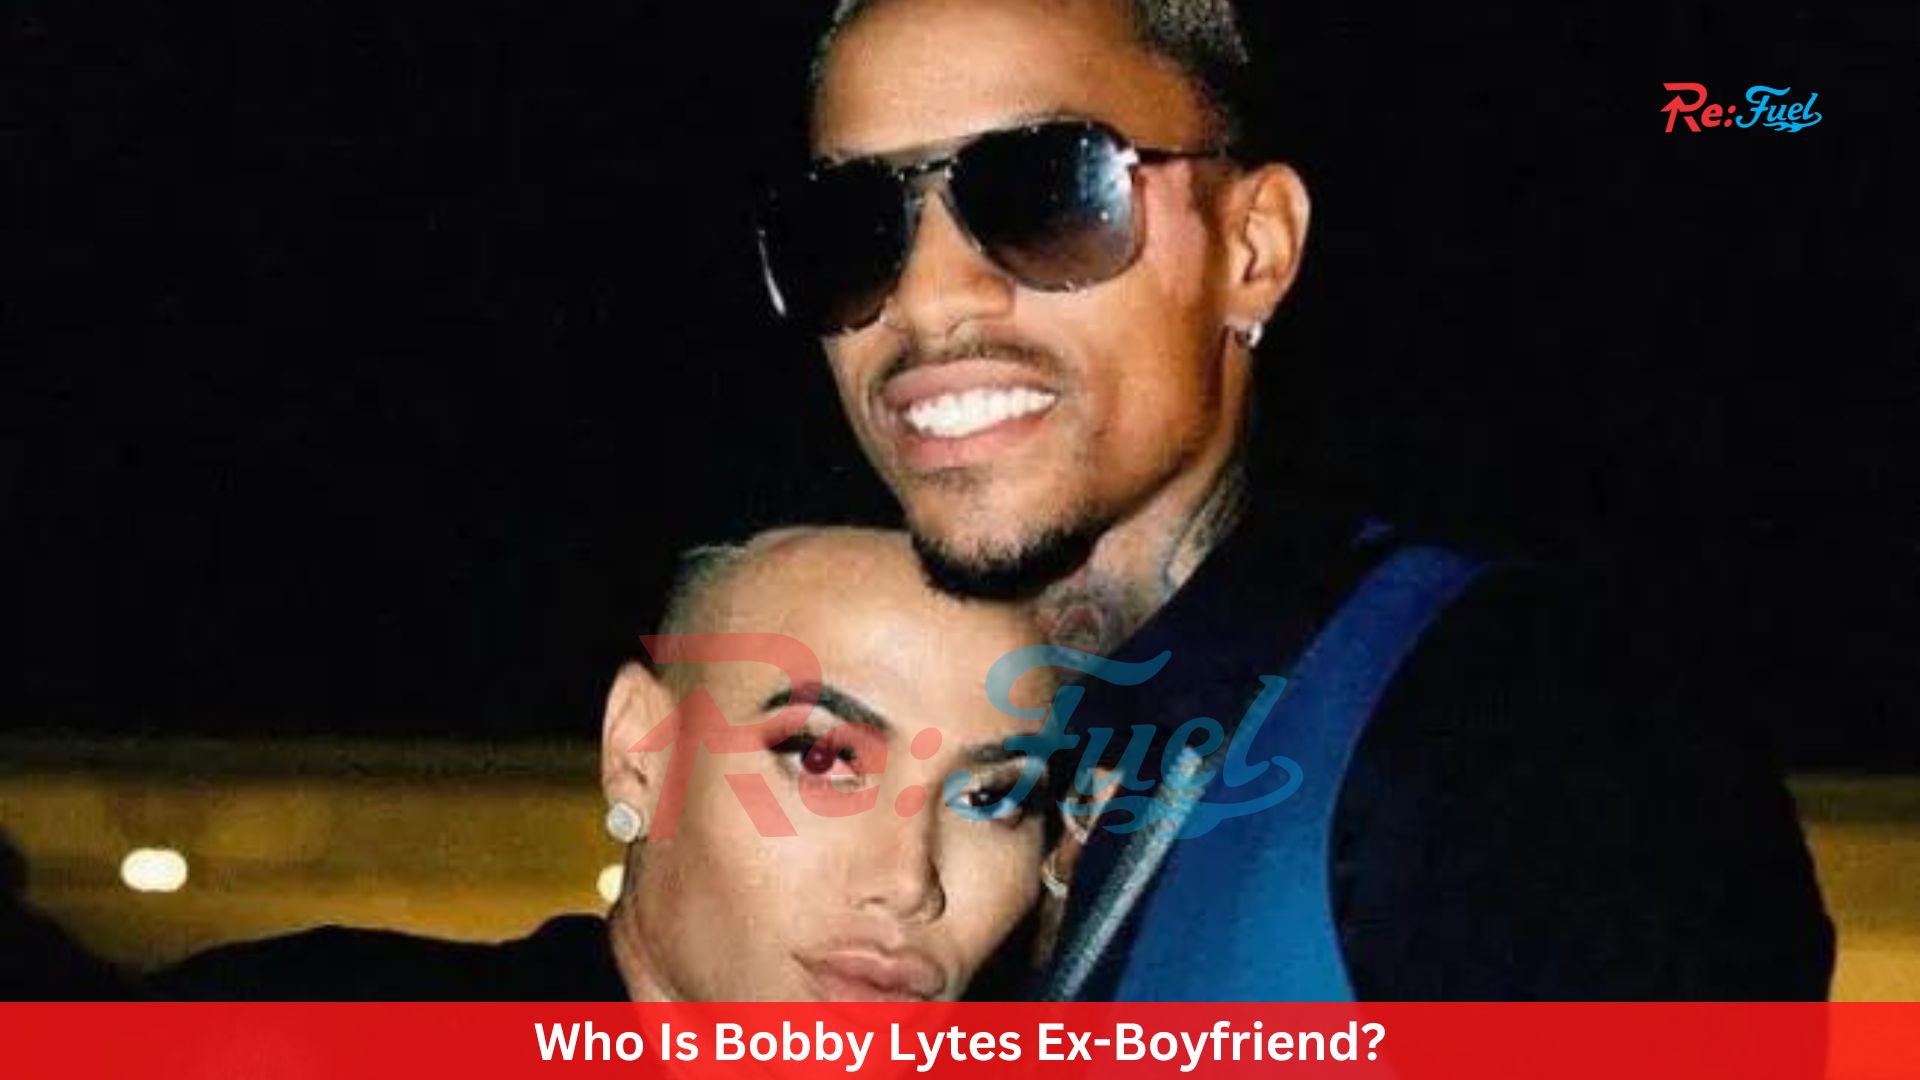 Who Is Bobby Lytes Ex-Boyfriend?